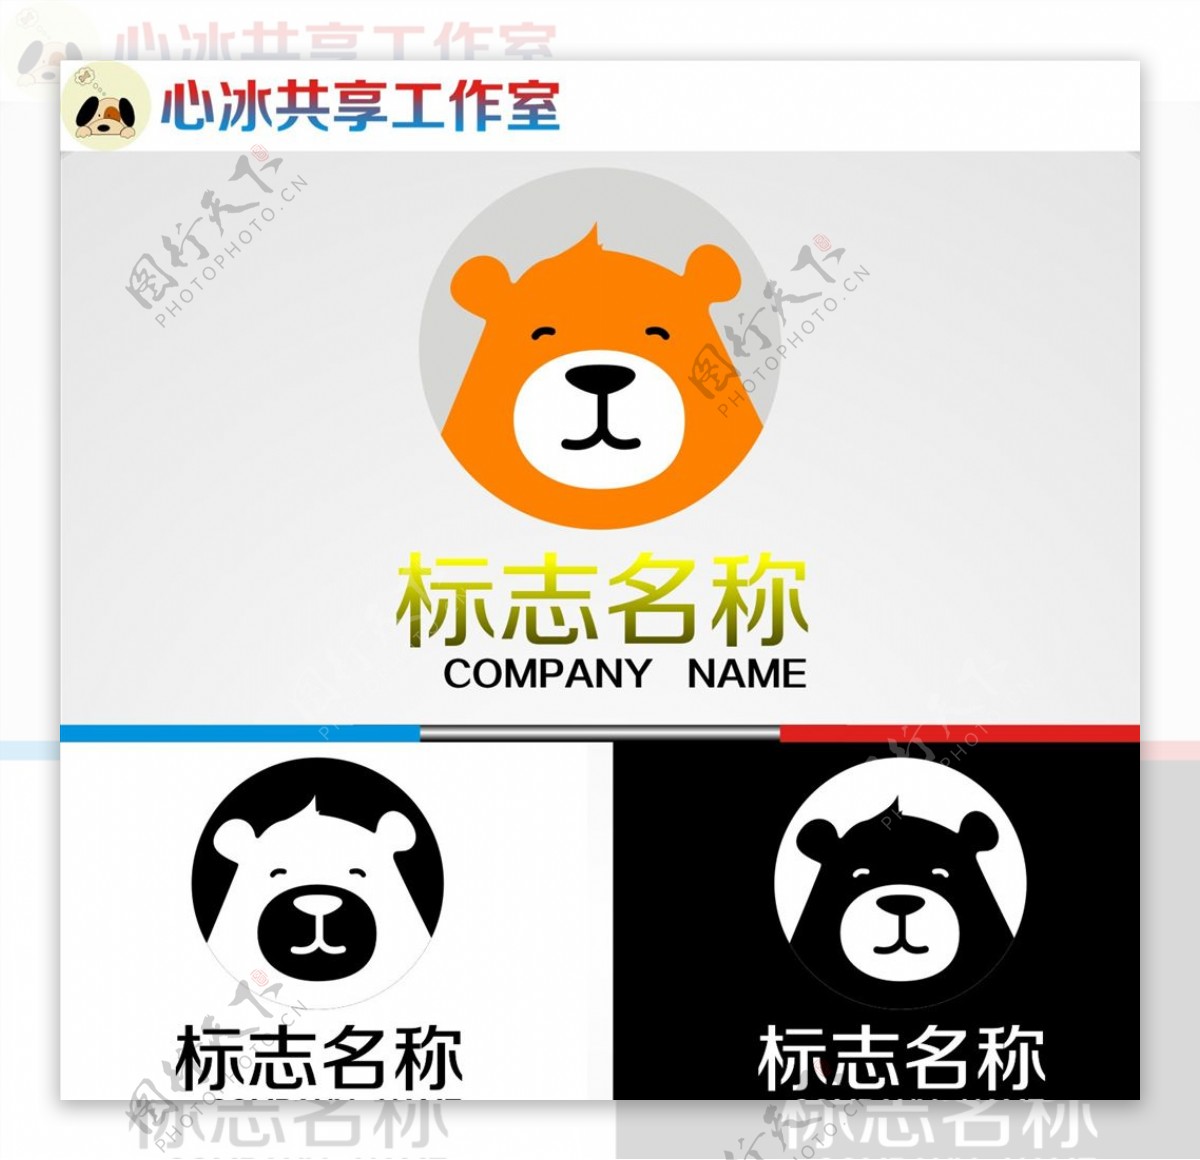 熊logo图片